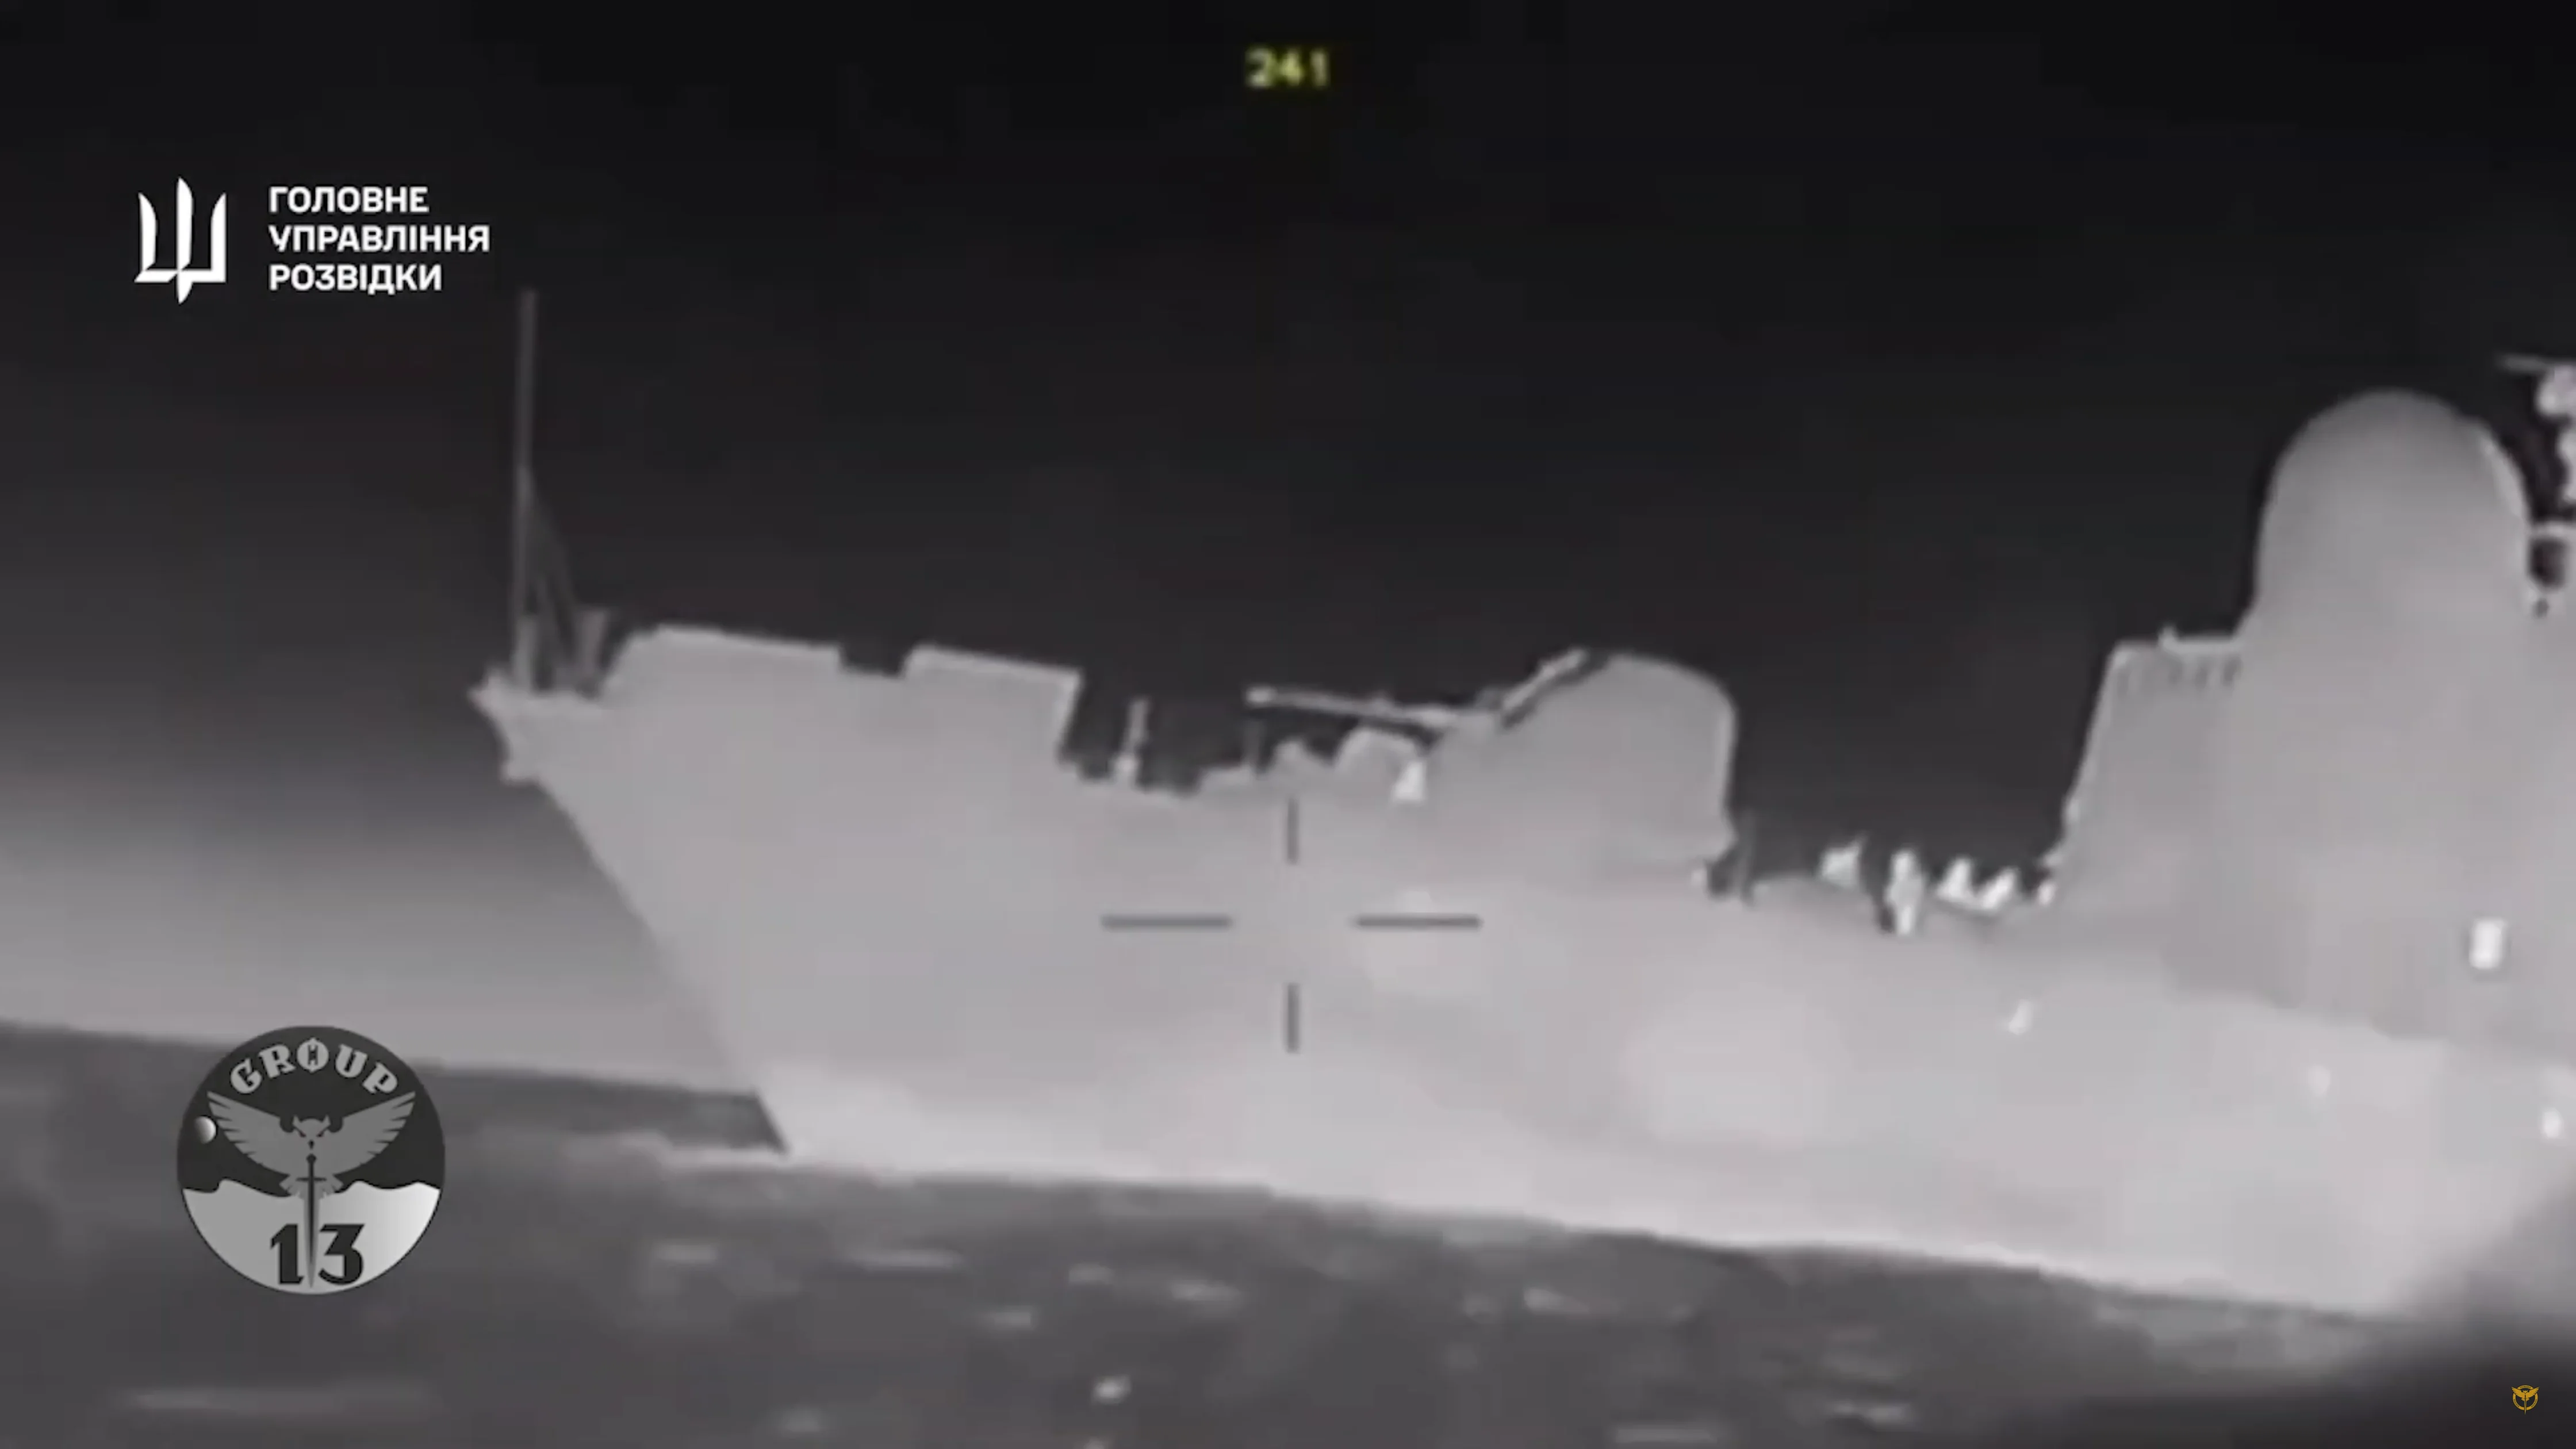 Ukraińcy zniszczyli rosyjską łódź rakietową w pobliżu anektowanego Krymu [WIDEO]